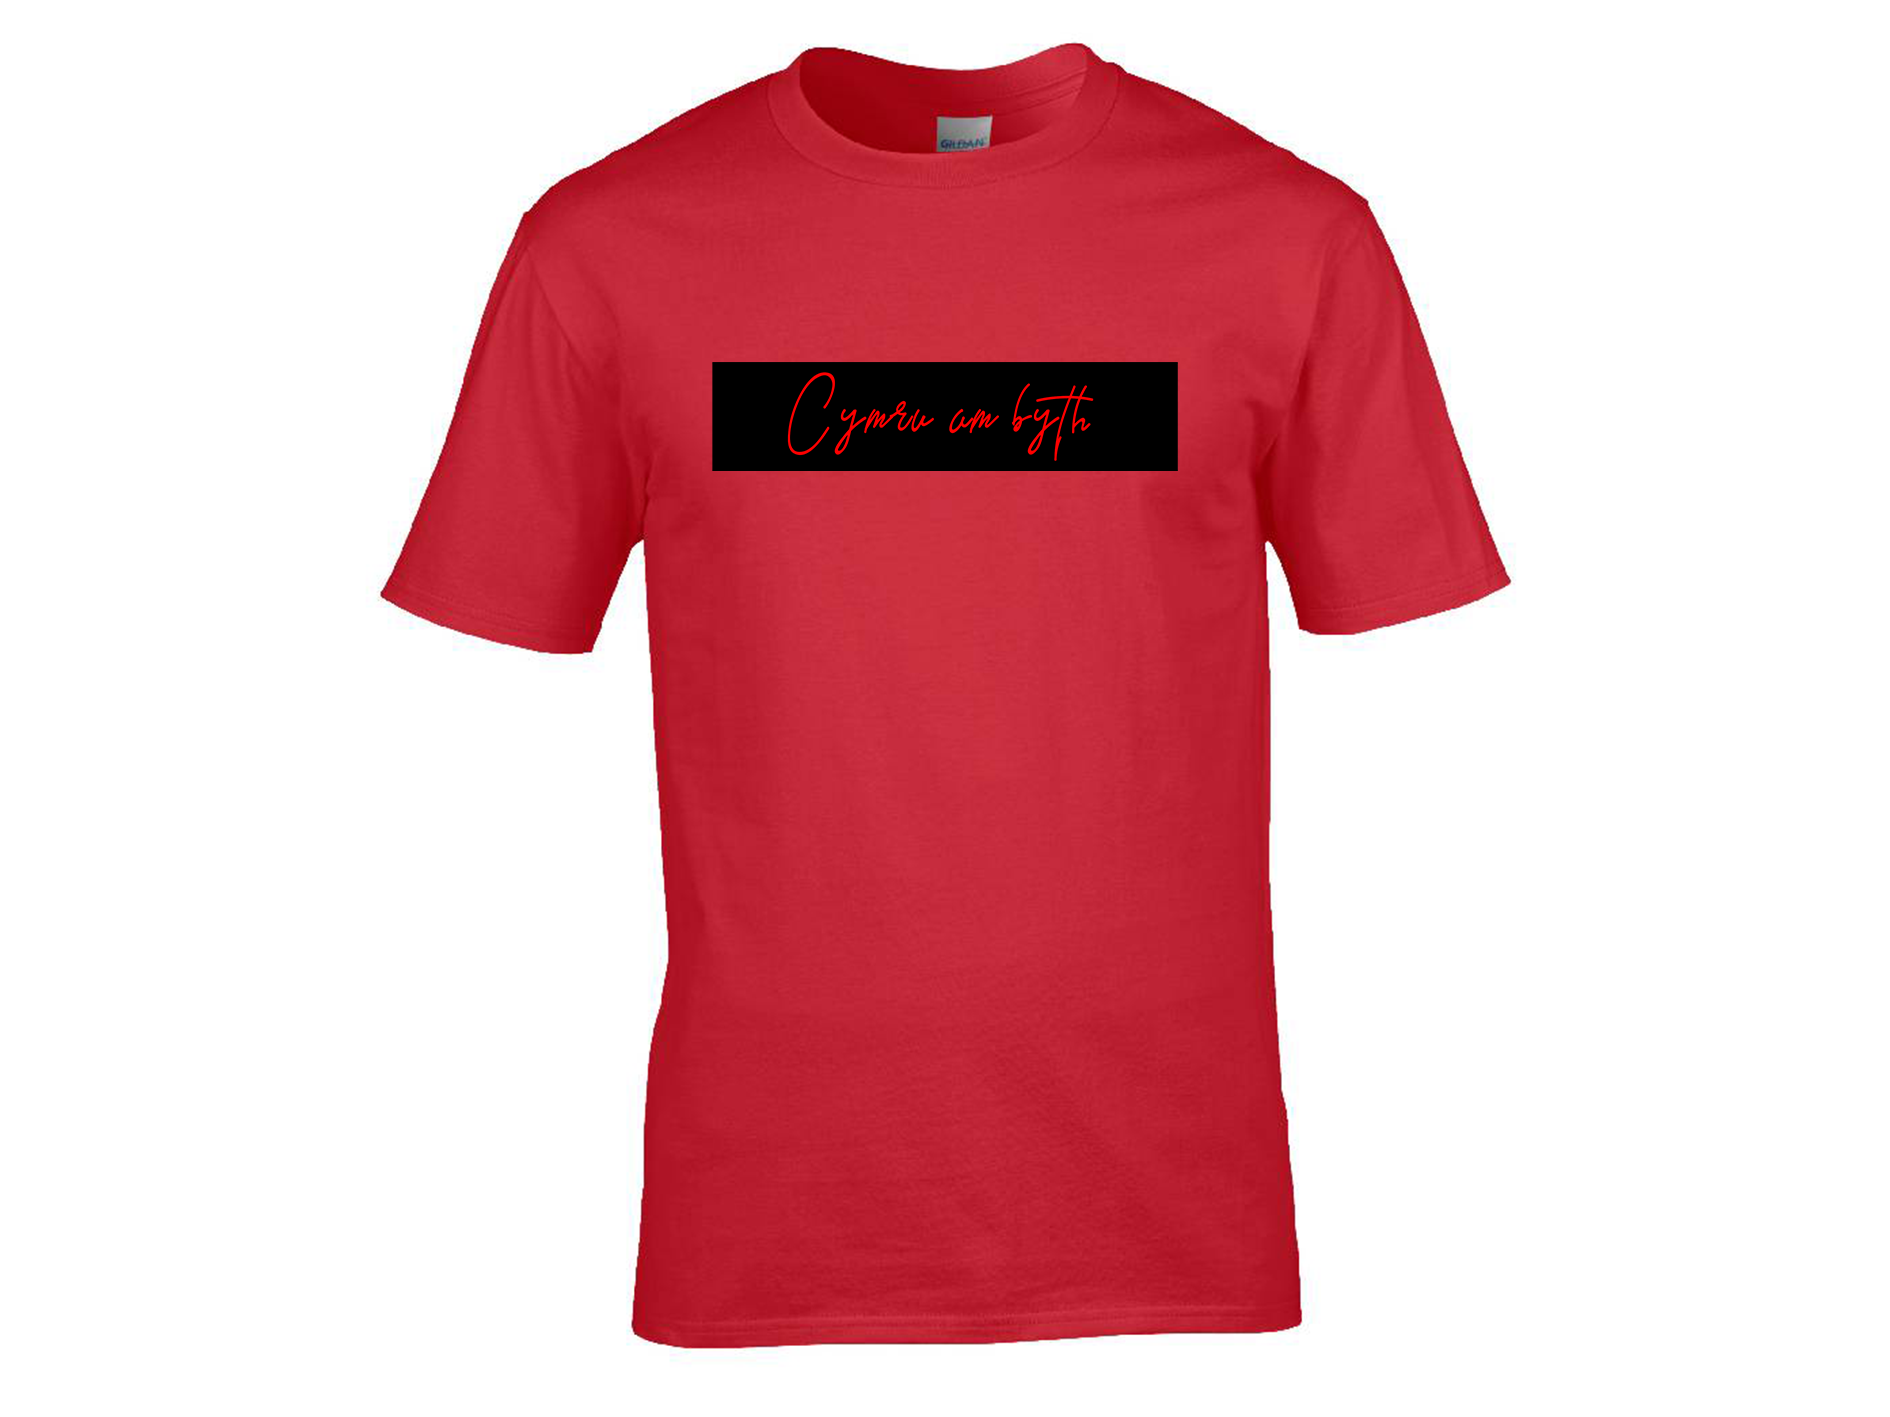 Cymru am byth t-shirt | Red